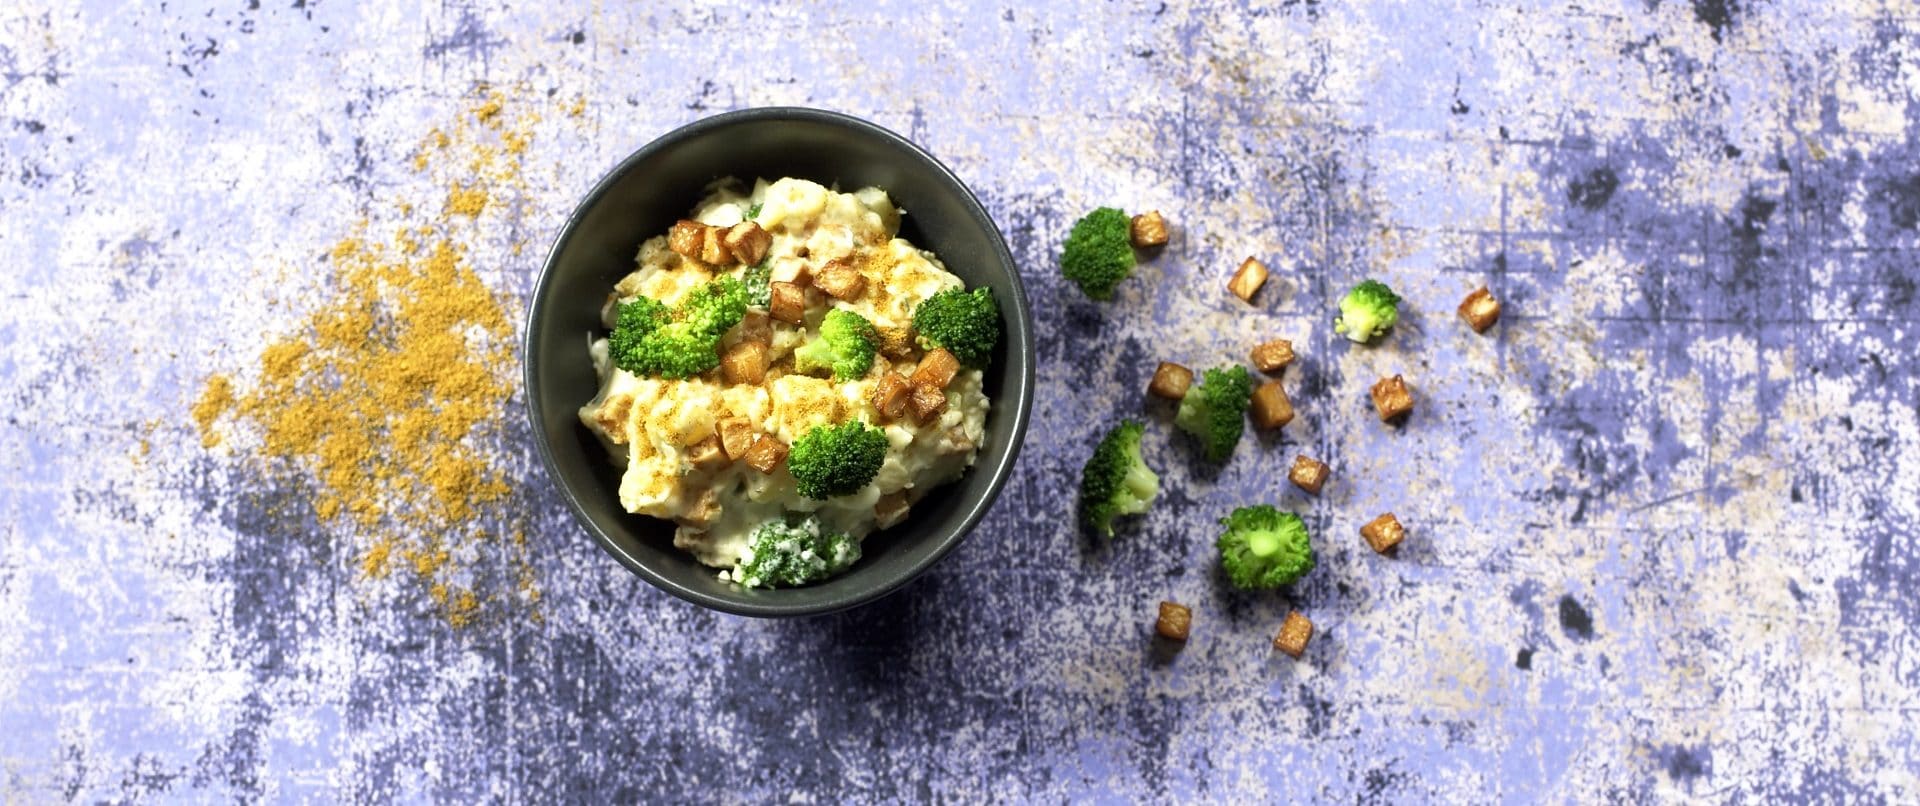 Potetsalat med broccoli og sellerirot